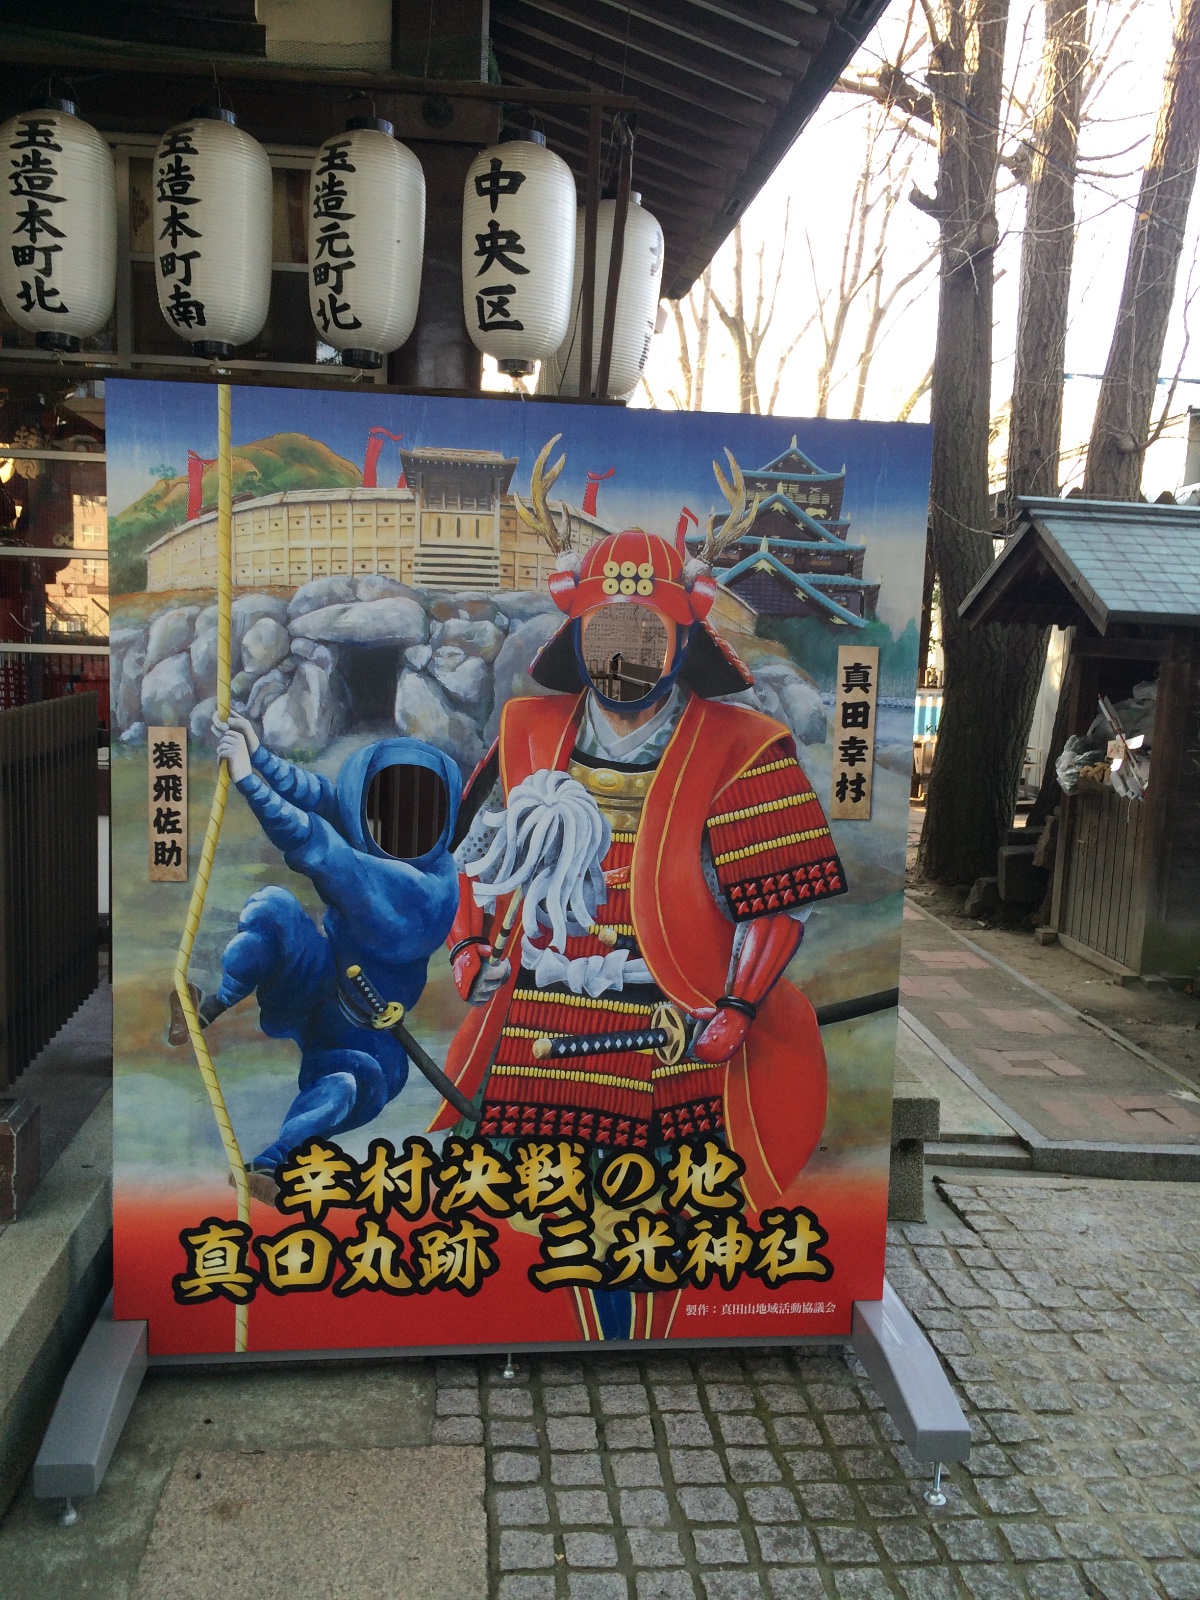 三光神社の顔出し看板、真田幸村・猿飛佐助になってみる